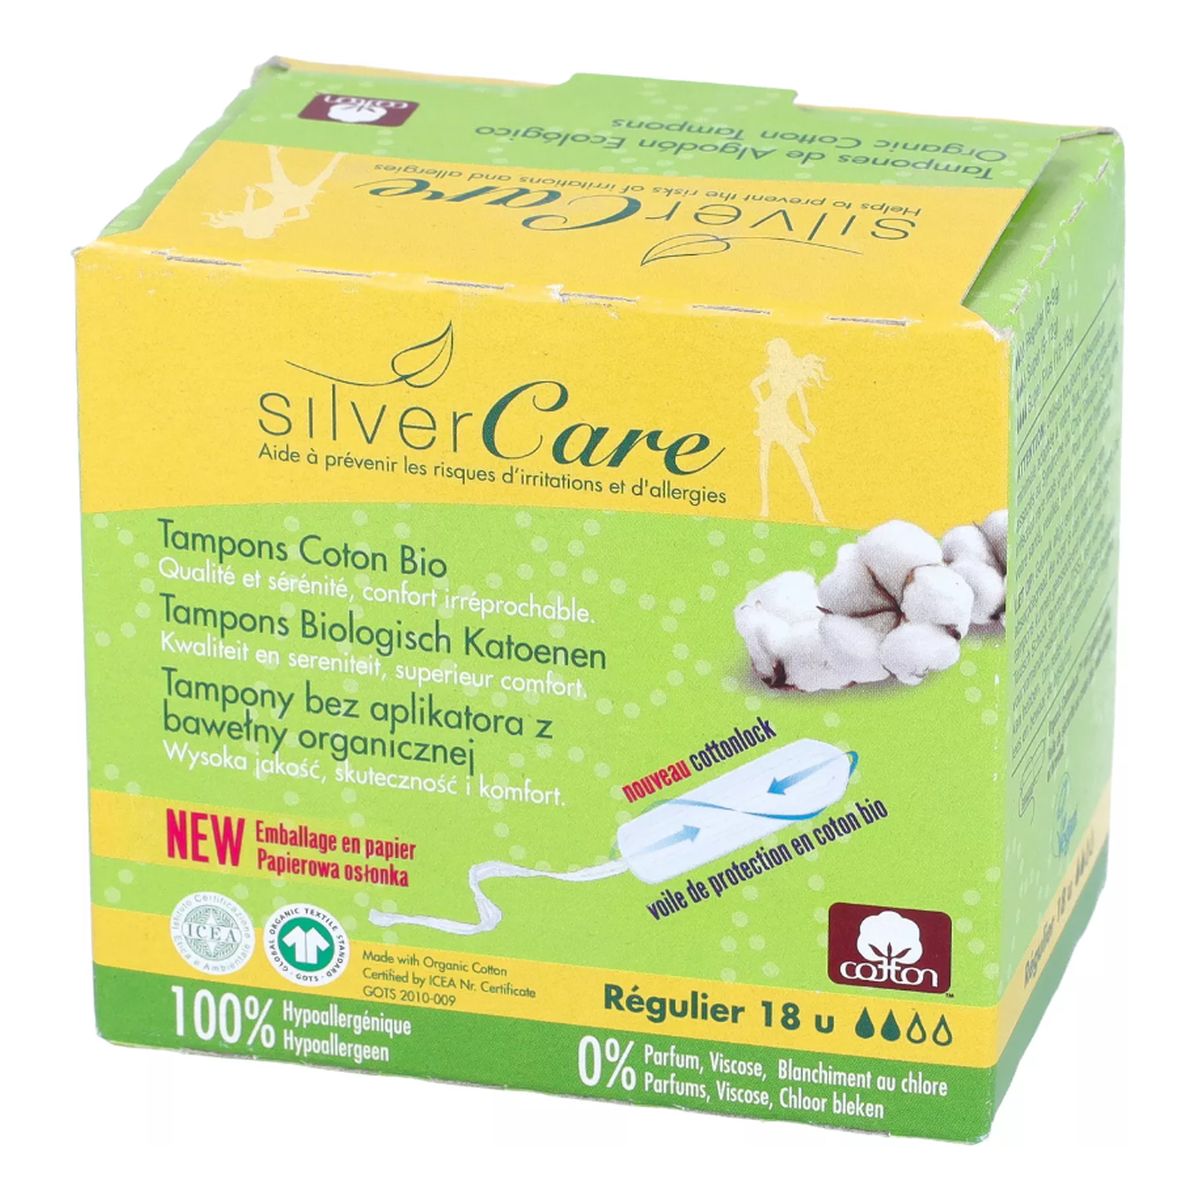 MASMI Silver Care Organiczne bawełniane tampony Regular bez aplikatora 100% bawełny organicznej 18szt